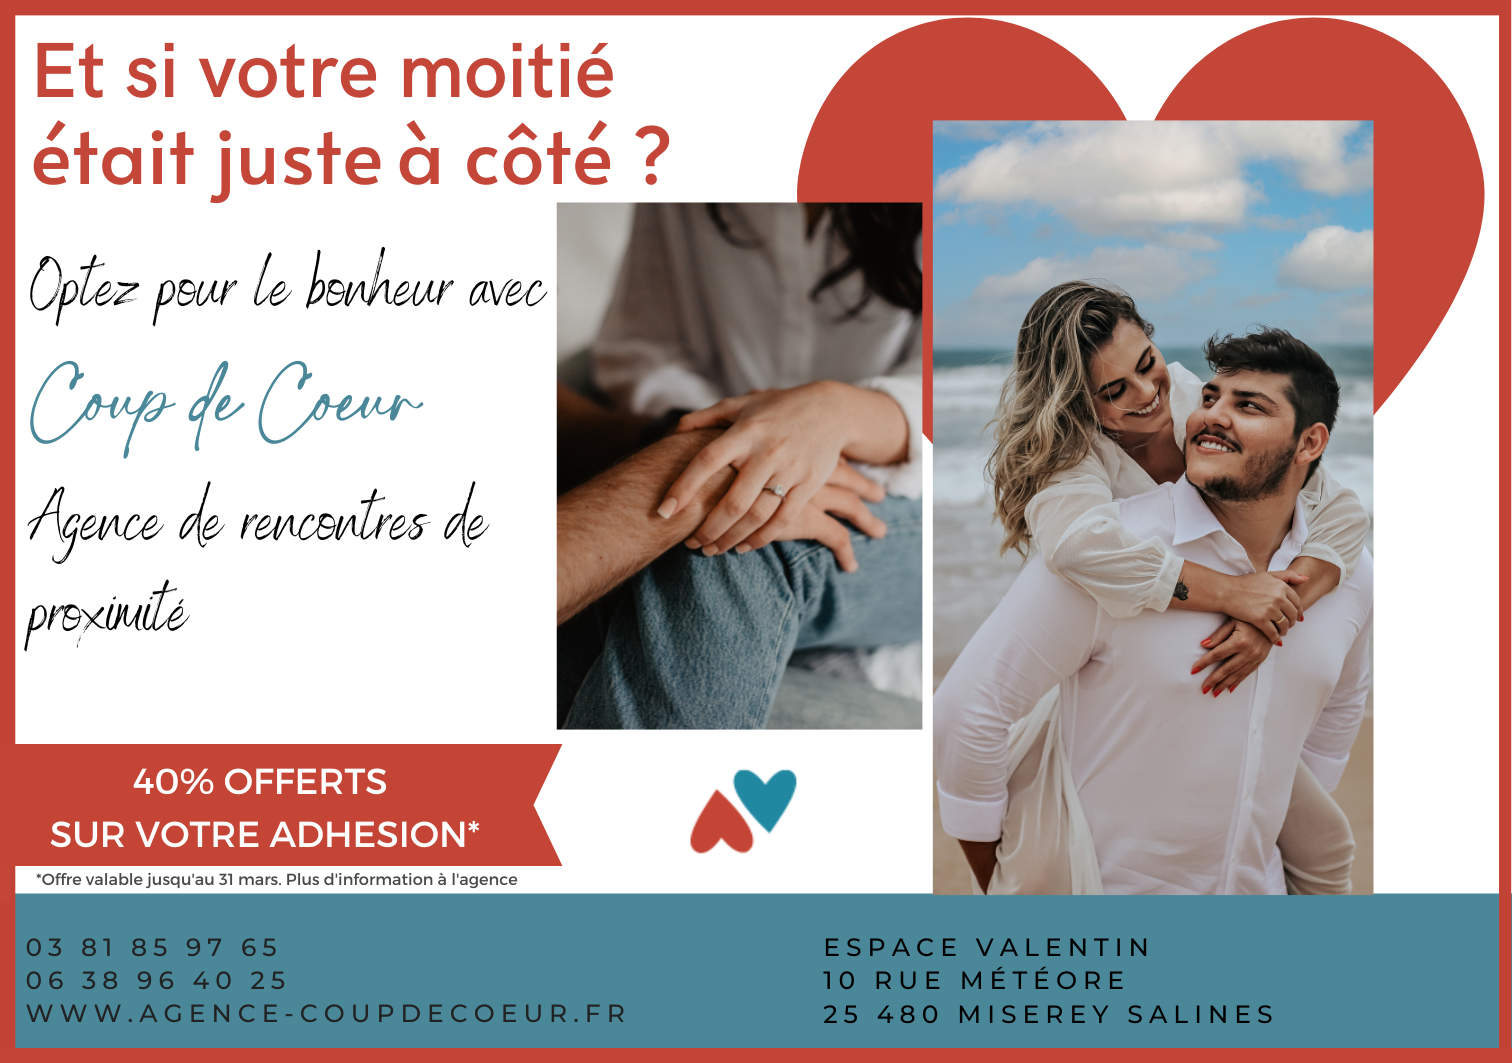 Agence de rencontres Besançon / agence matrimoniale Coup de coeur / rencontres en franche comté 